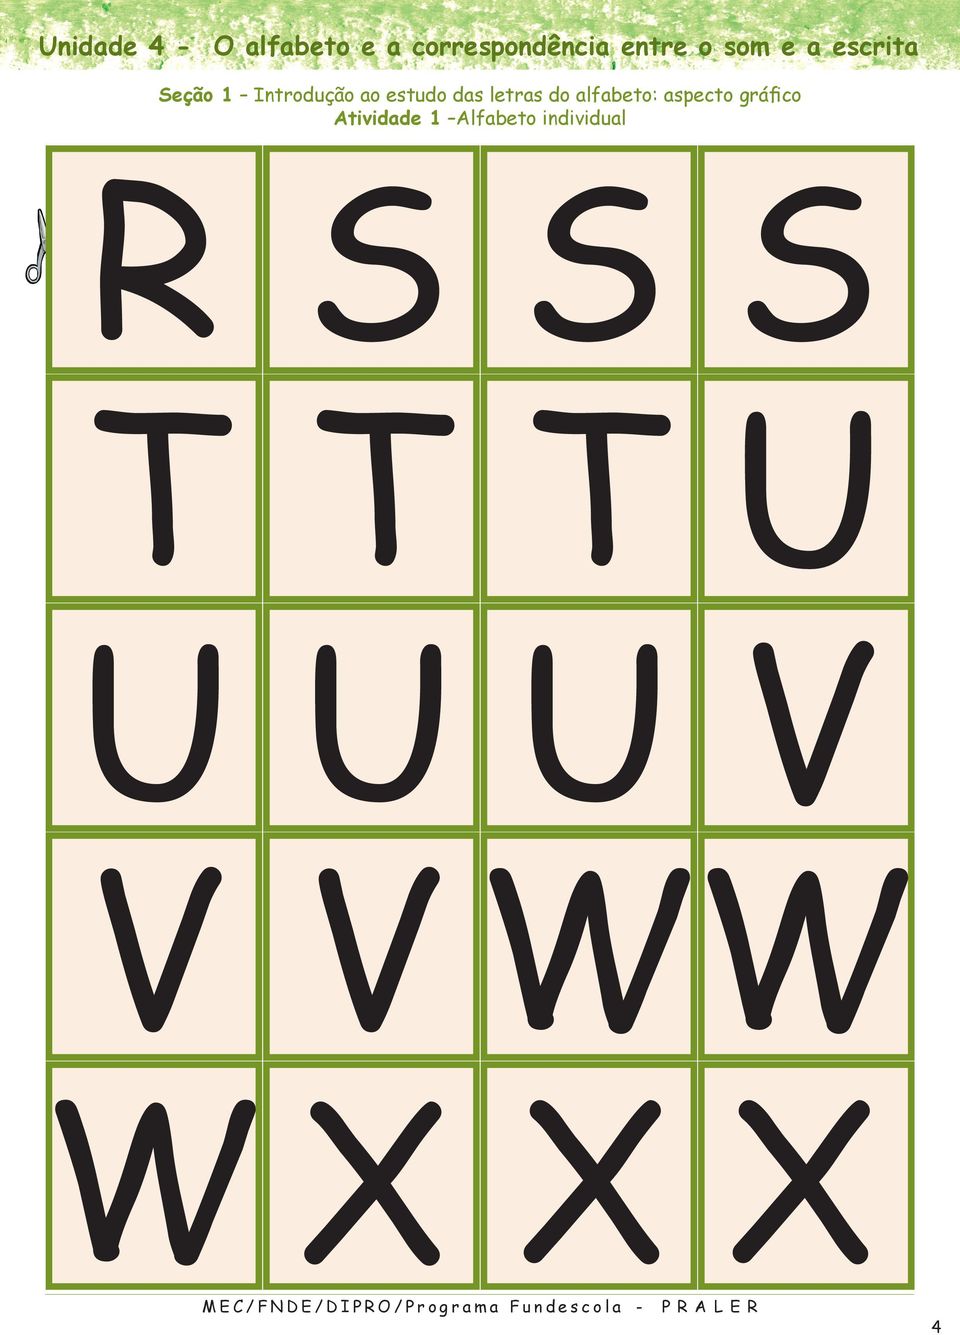 ao estudo das letras do alfabeto: aspecto